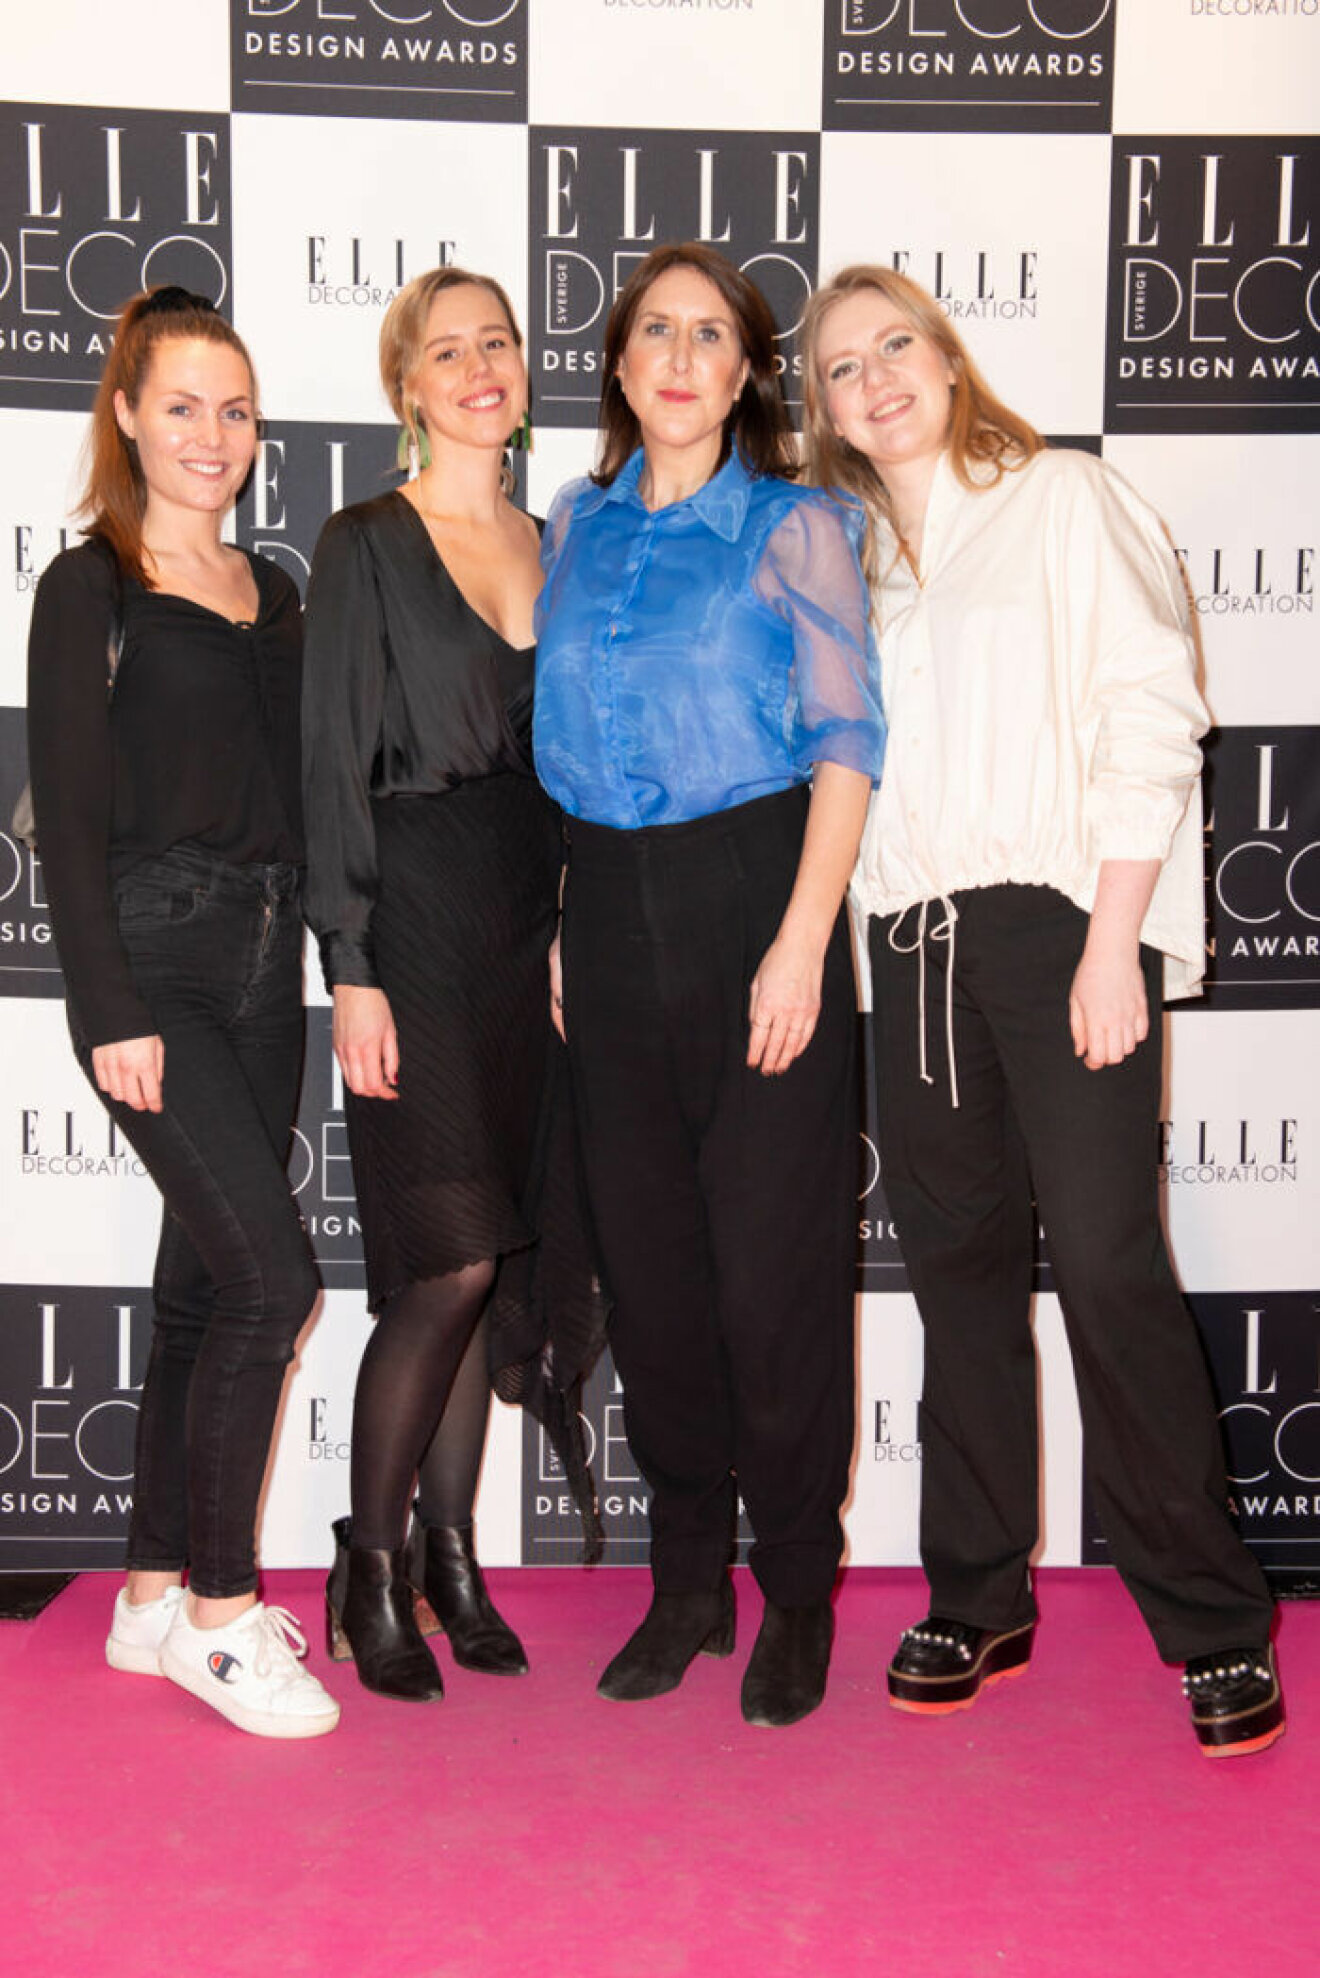 Lena Ståhlbrink, Hanna Stråhle, Malin Glemme och Lisa Nyman på ELLE Deco Design Awards 2020